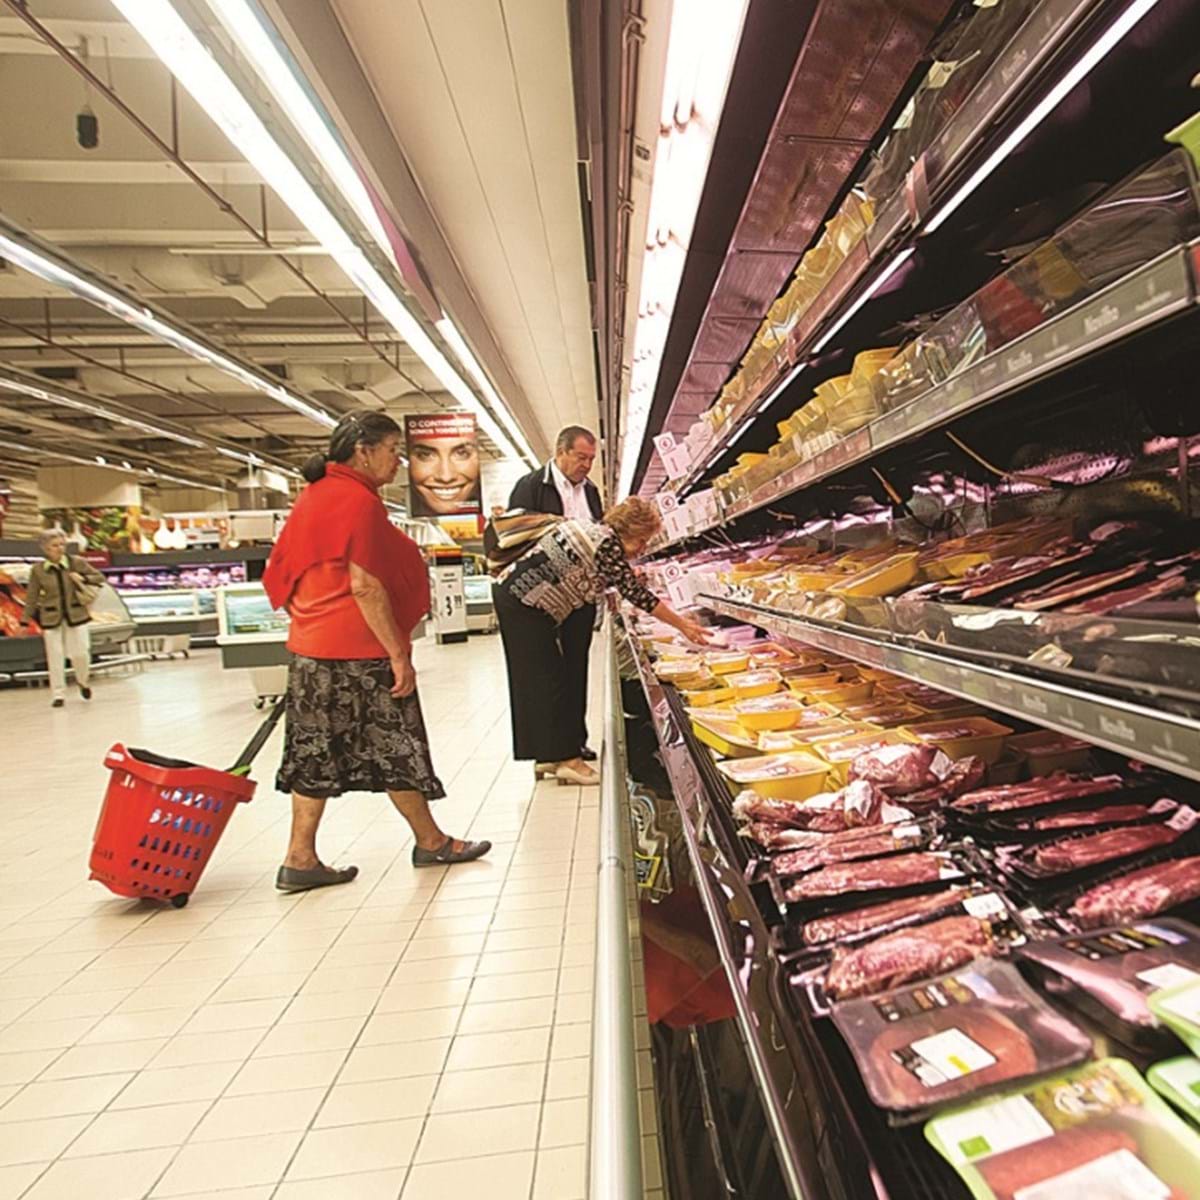 Jumbo é o supermercado mais barato - Distribuição Hoje